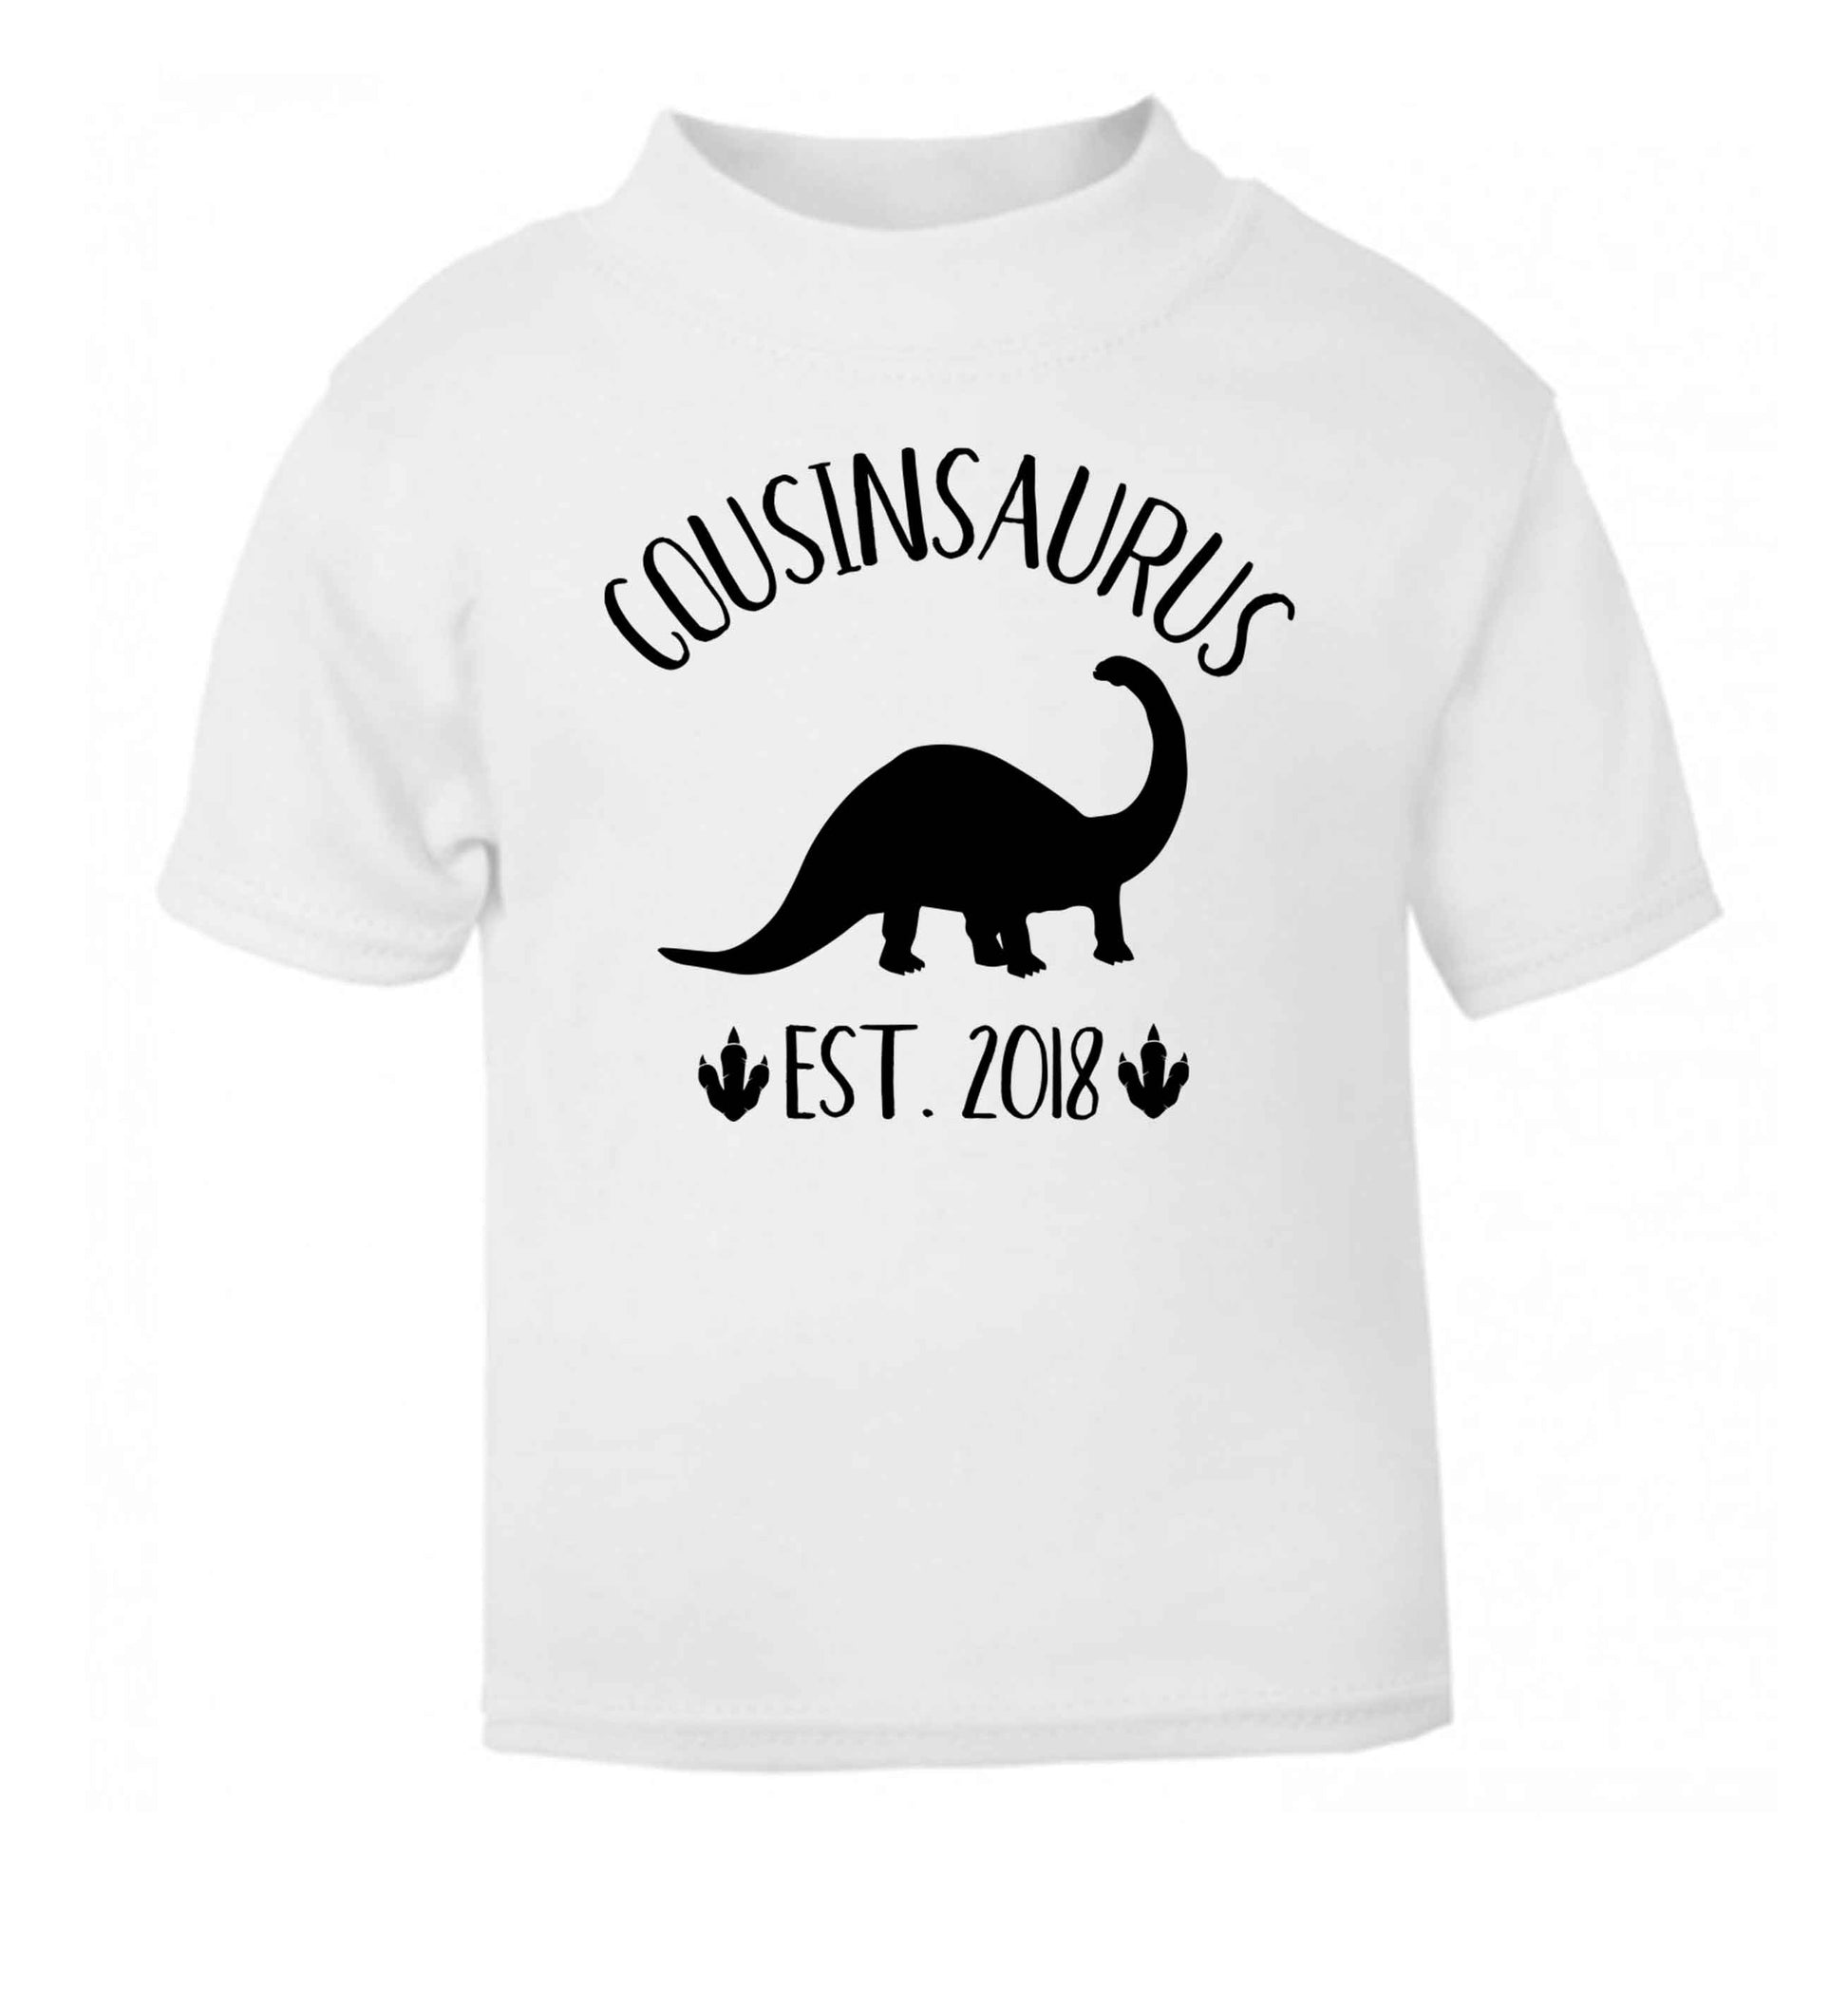 Personalised cousinsaurus since (custom date) white Baby Toddler Tshirt 2 Years